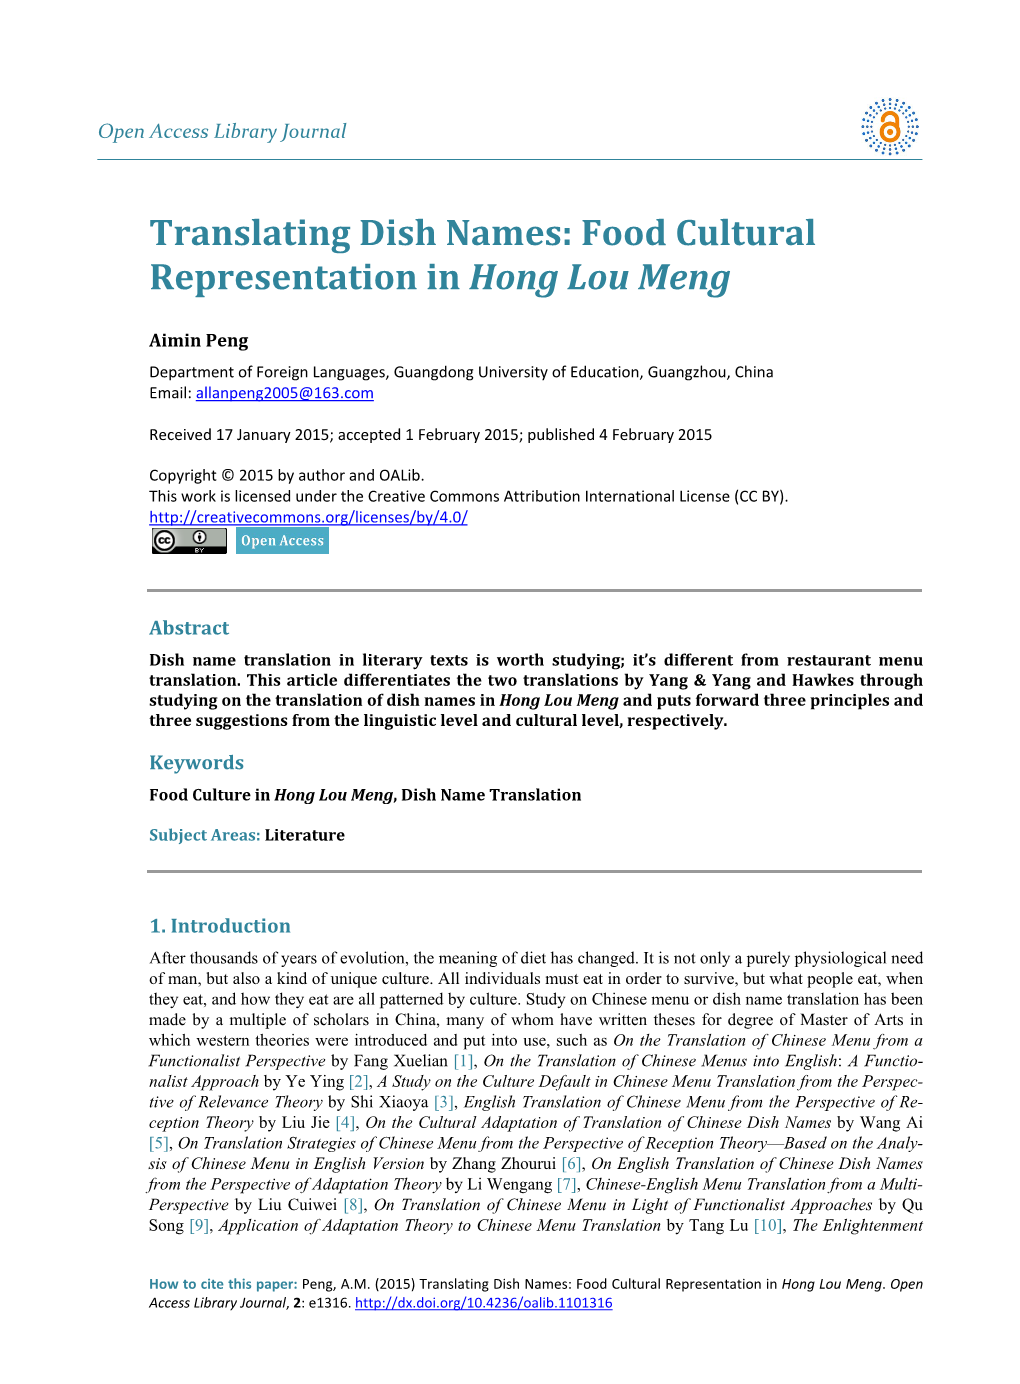 Translating Dish Names: Food Cultural Representation in Hong Lou Meng